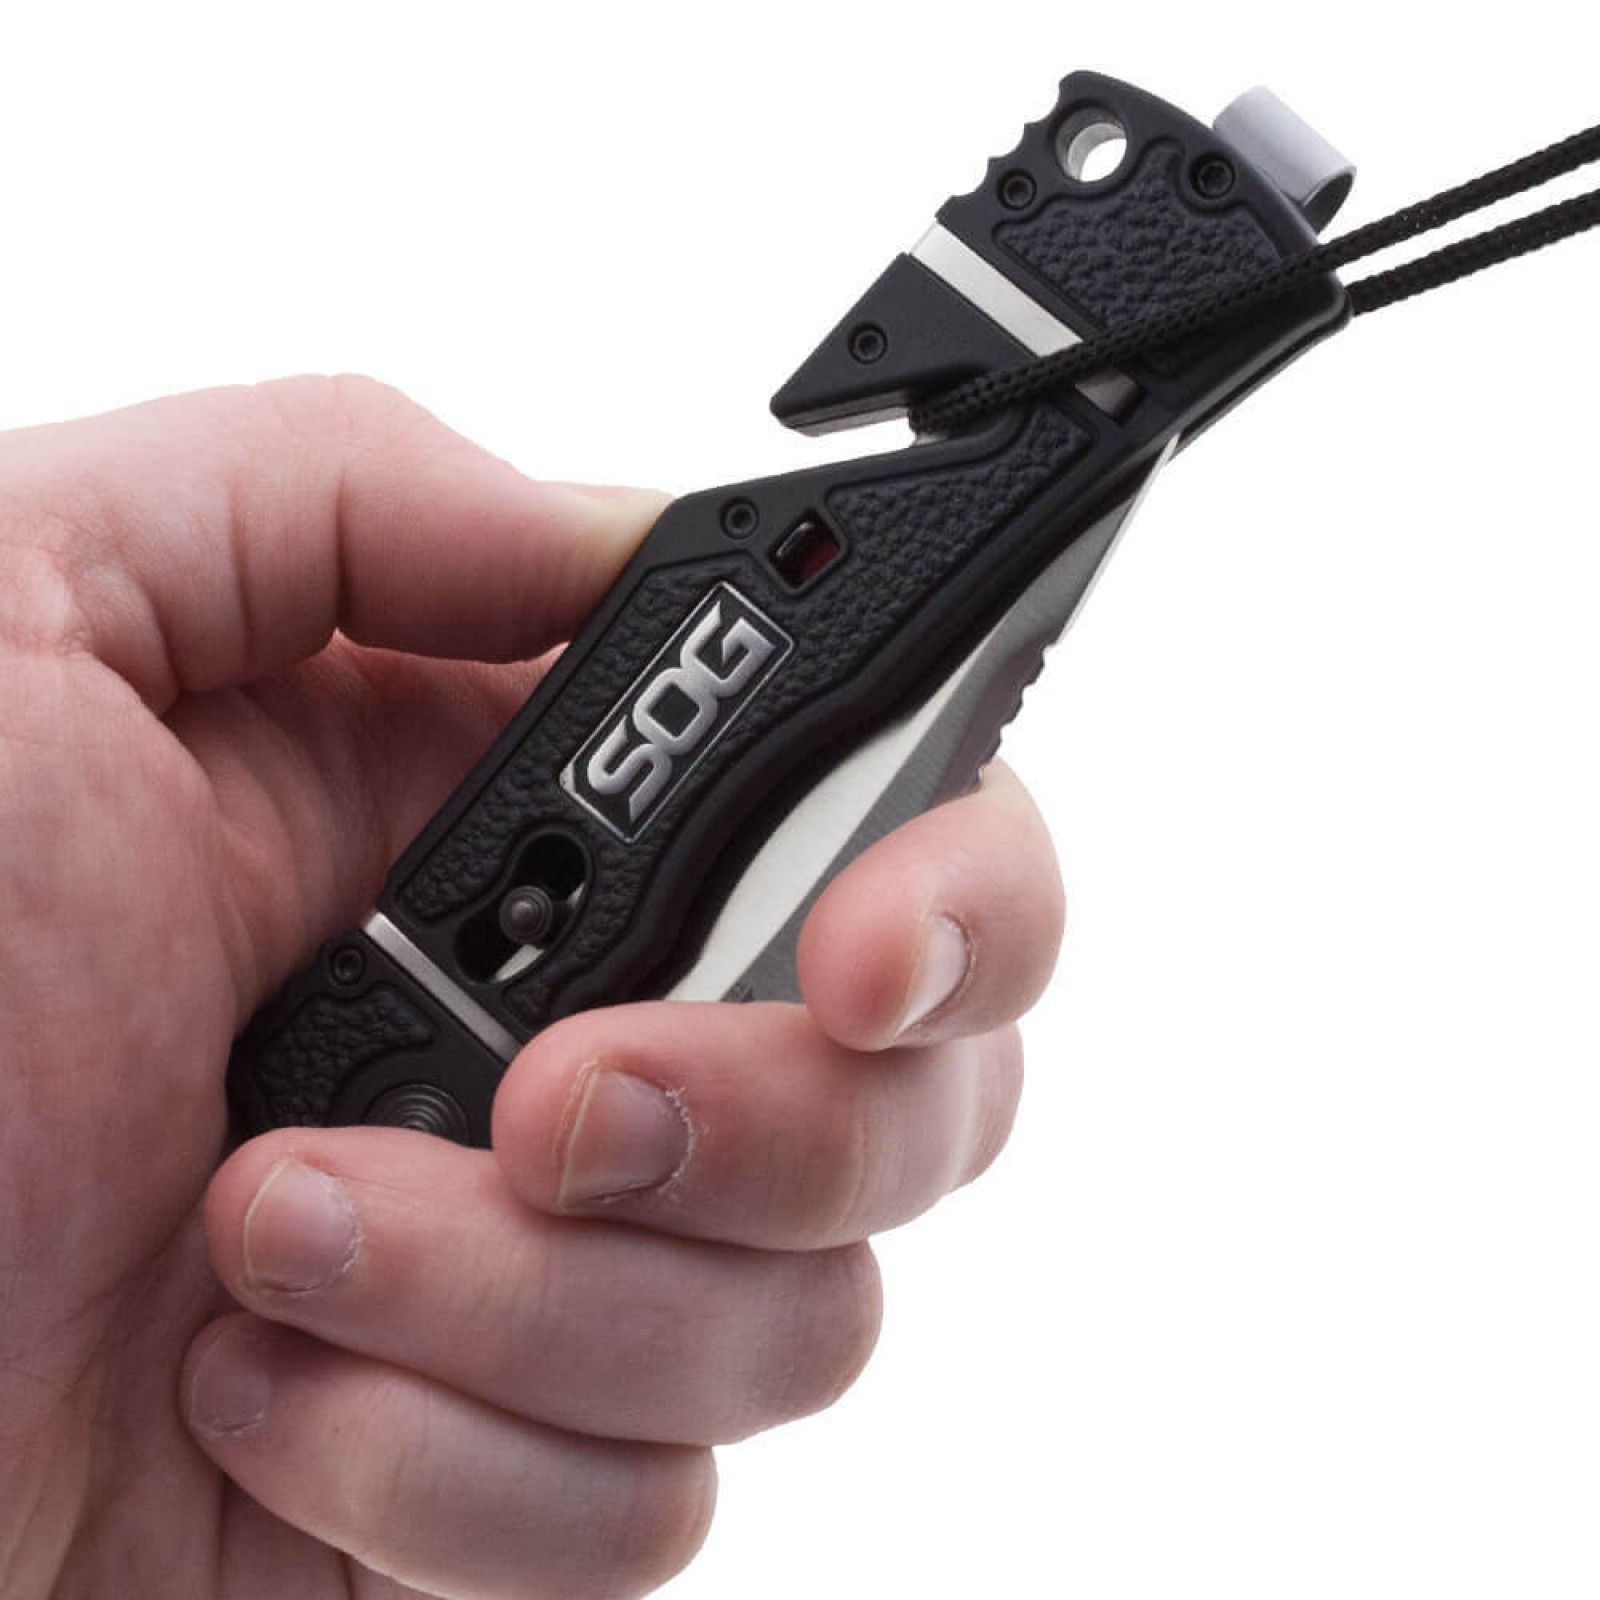 Складной нож TRIDENT ELITE - SOG TF101, сталь AUS-8, рукоять термопластик GRN с резиновыми вставками - фото 8